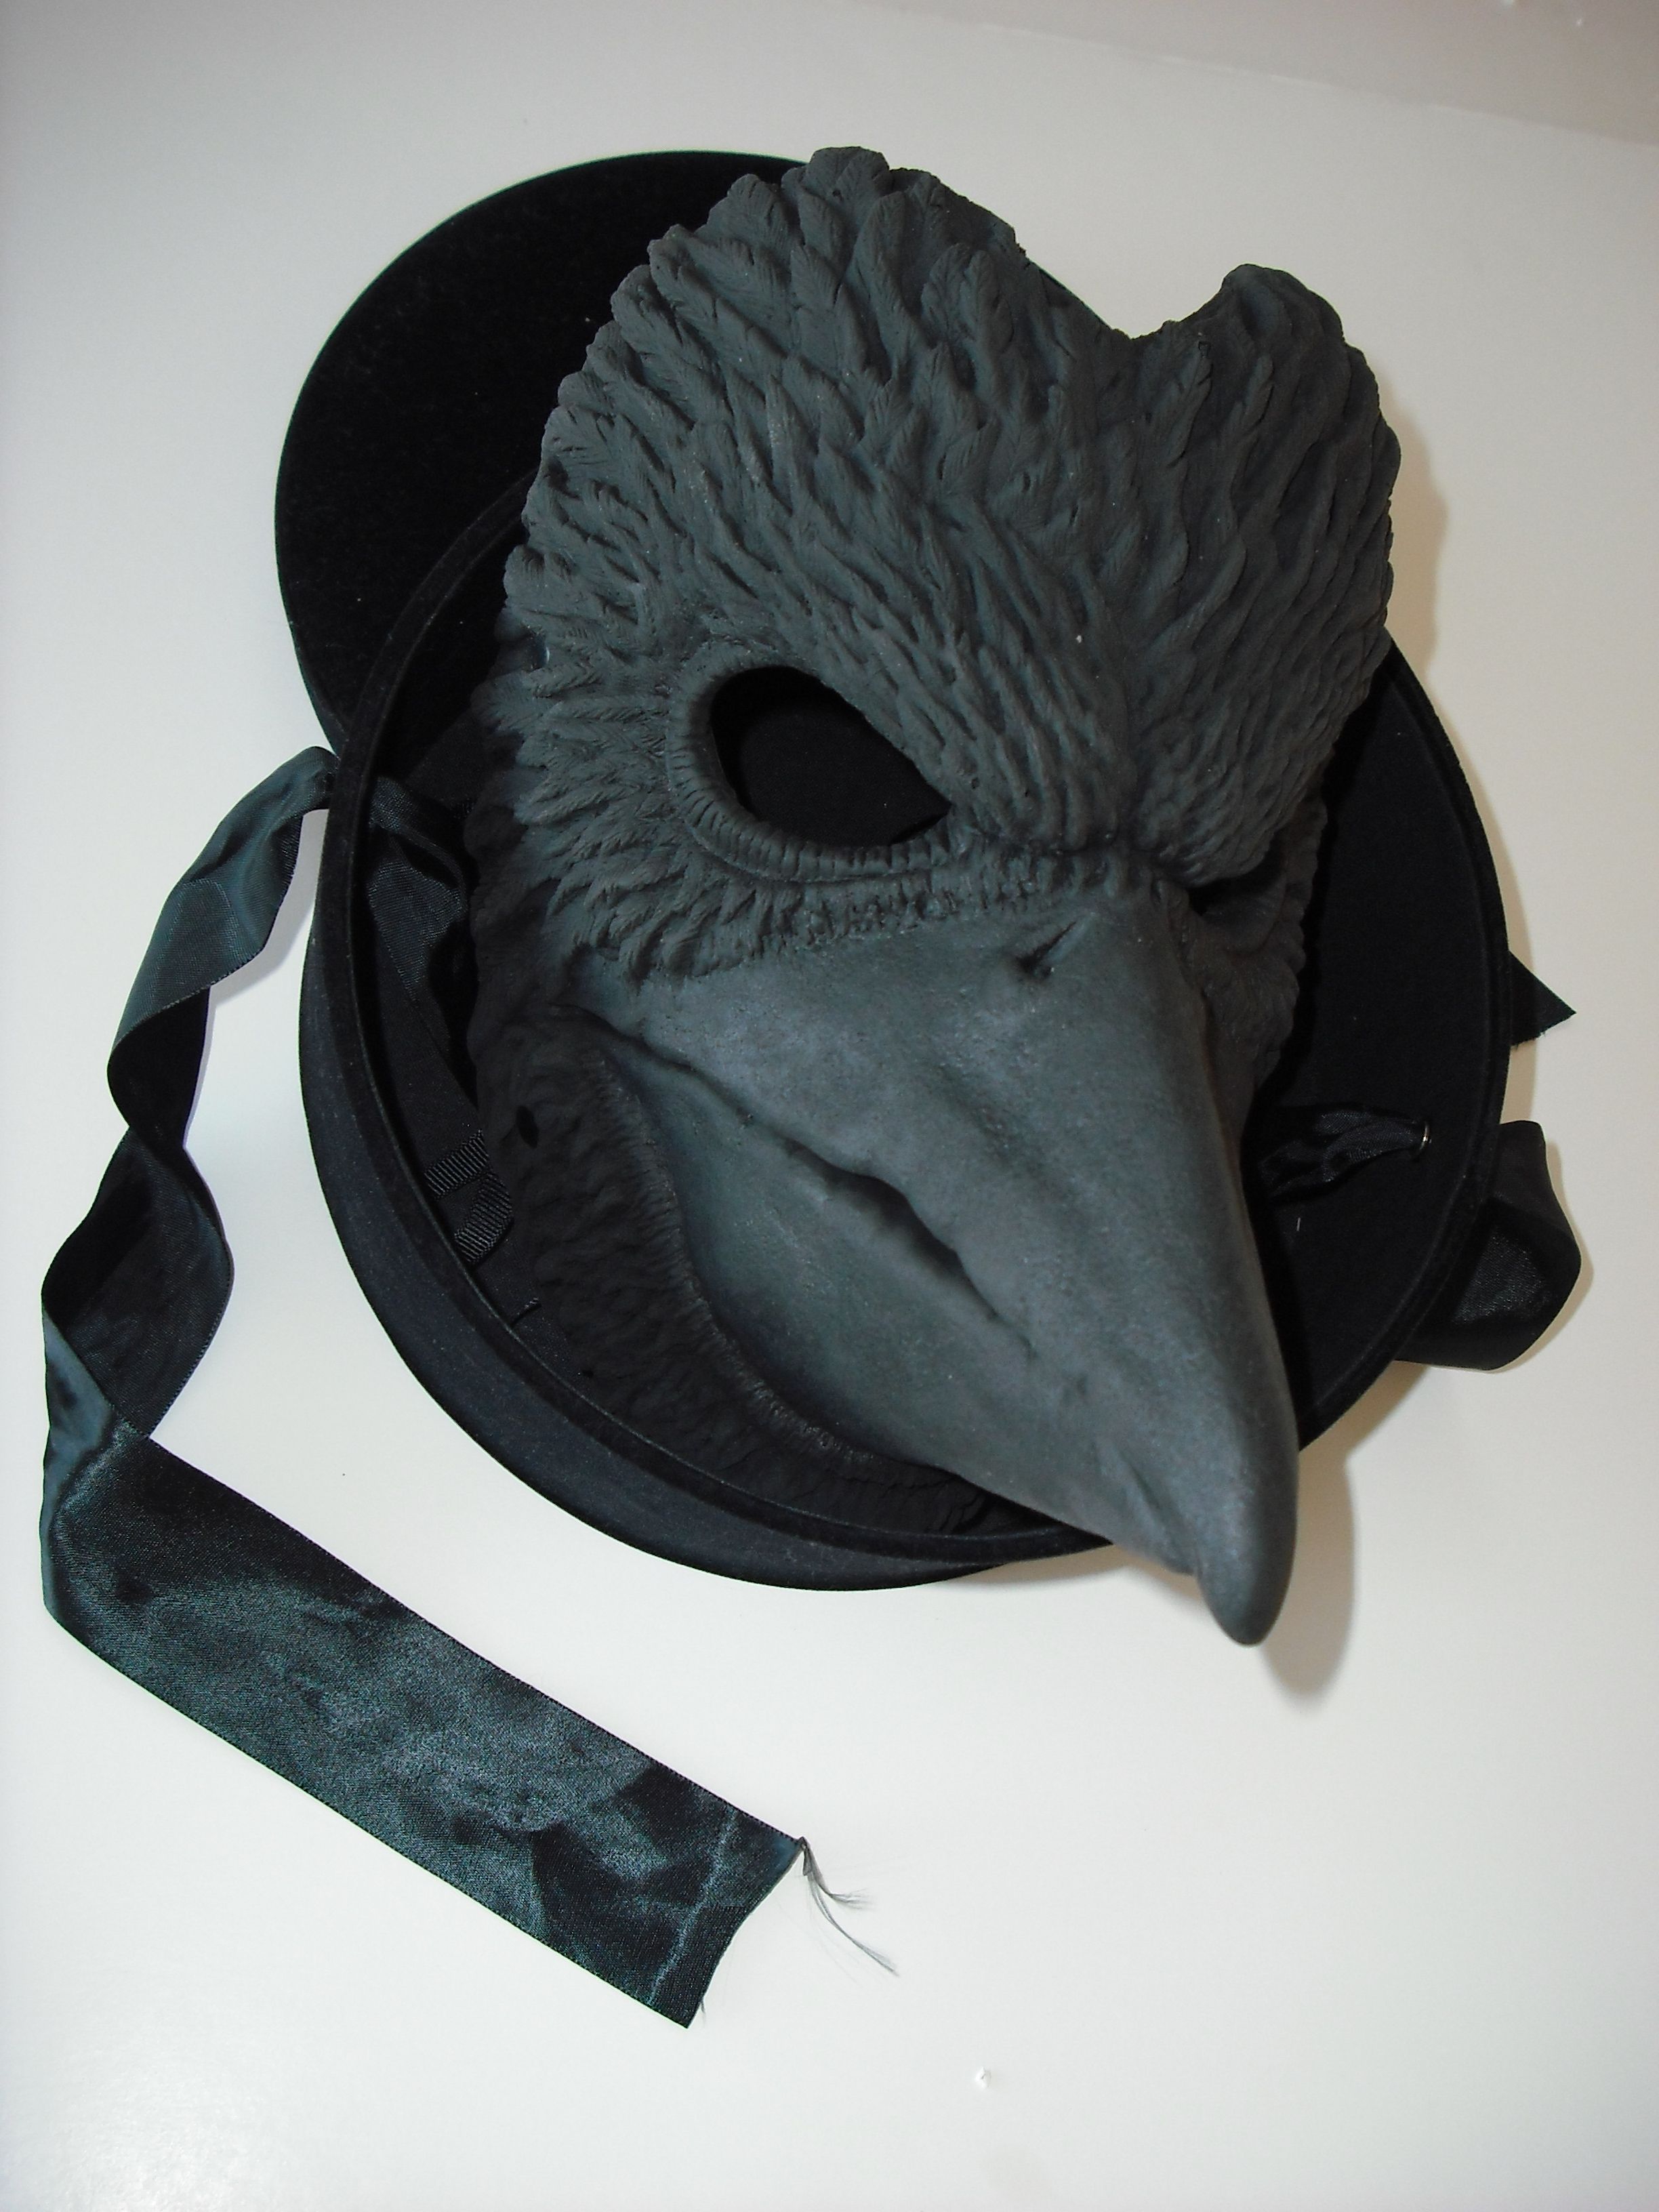 Сделать маску вороны своими руками: Как сделать маску вороны для маскарада своими руками?